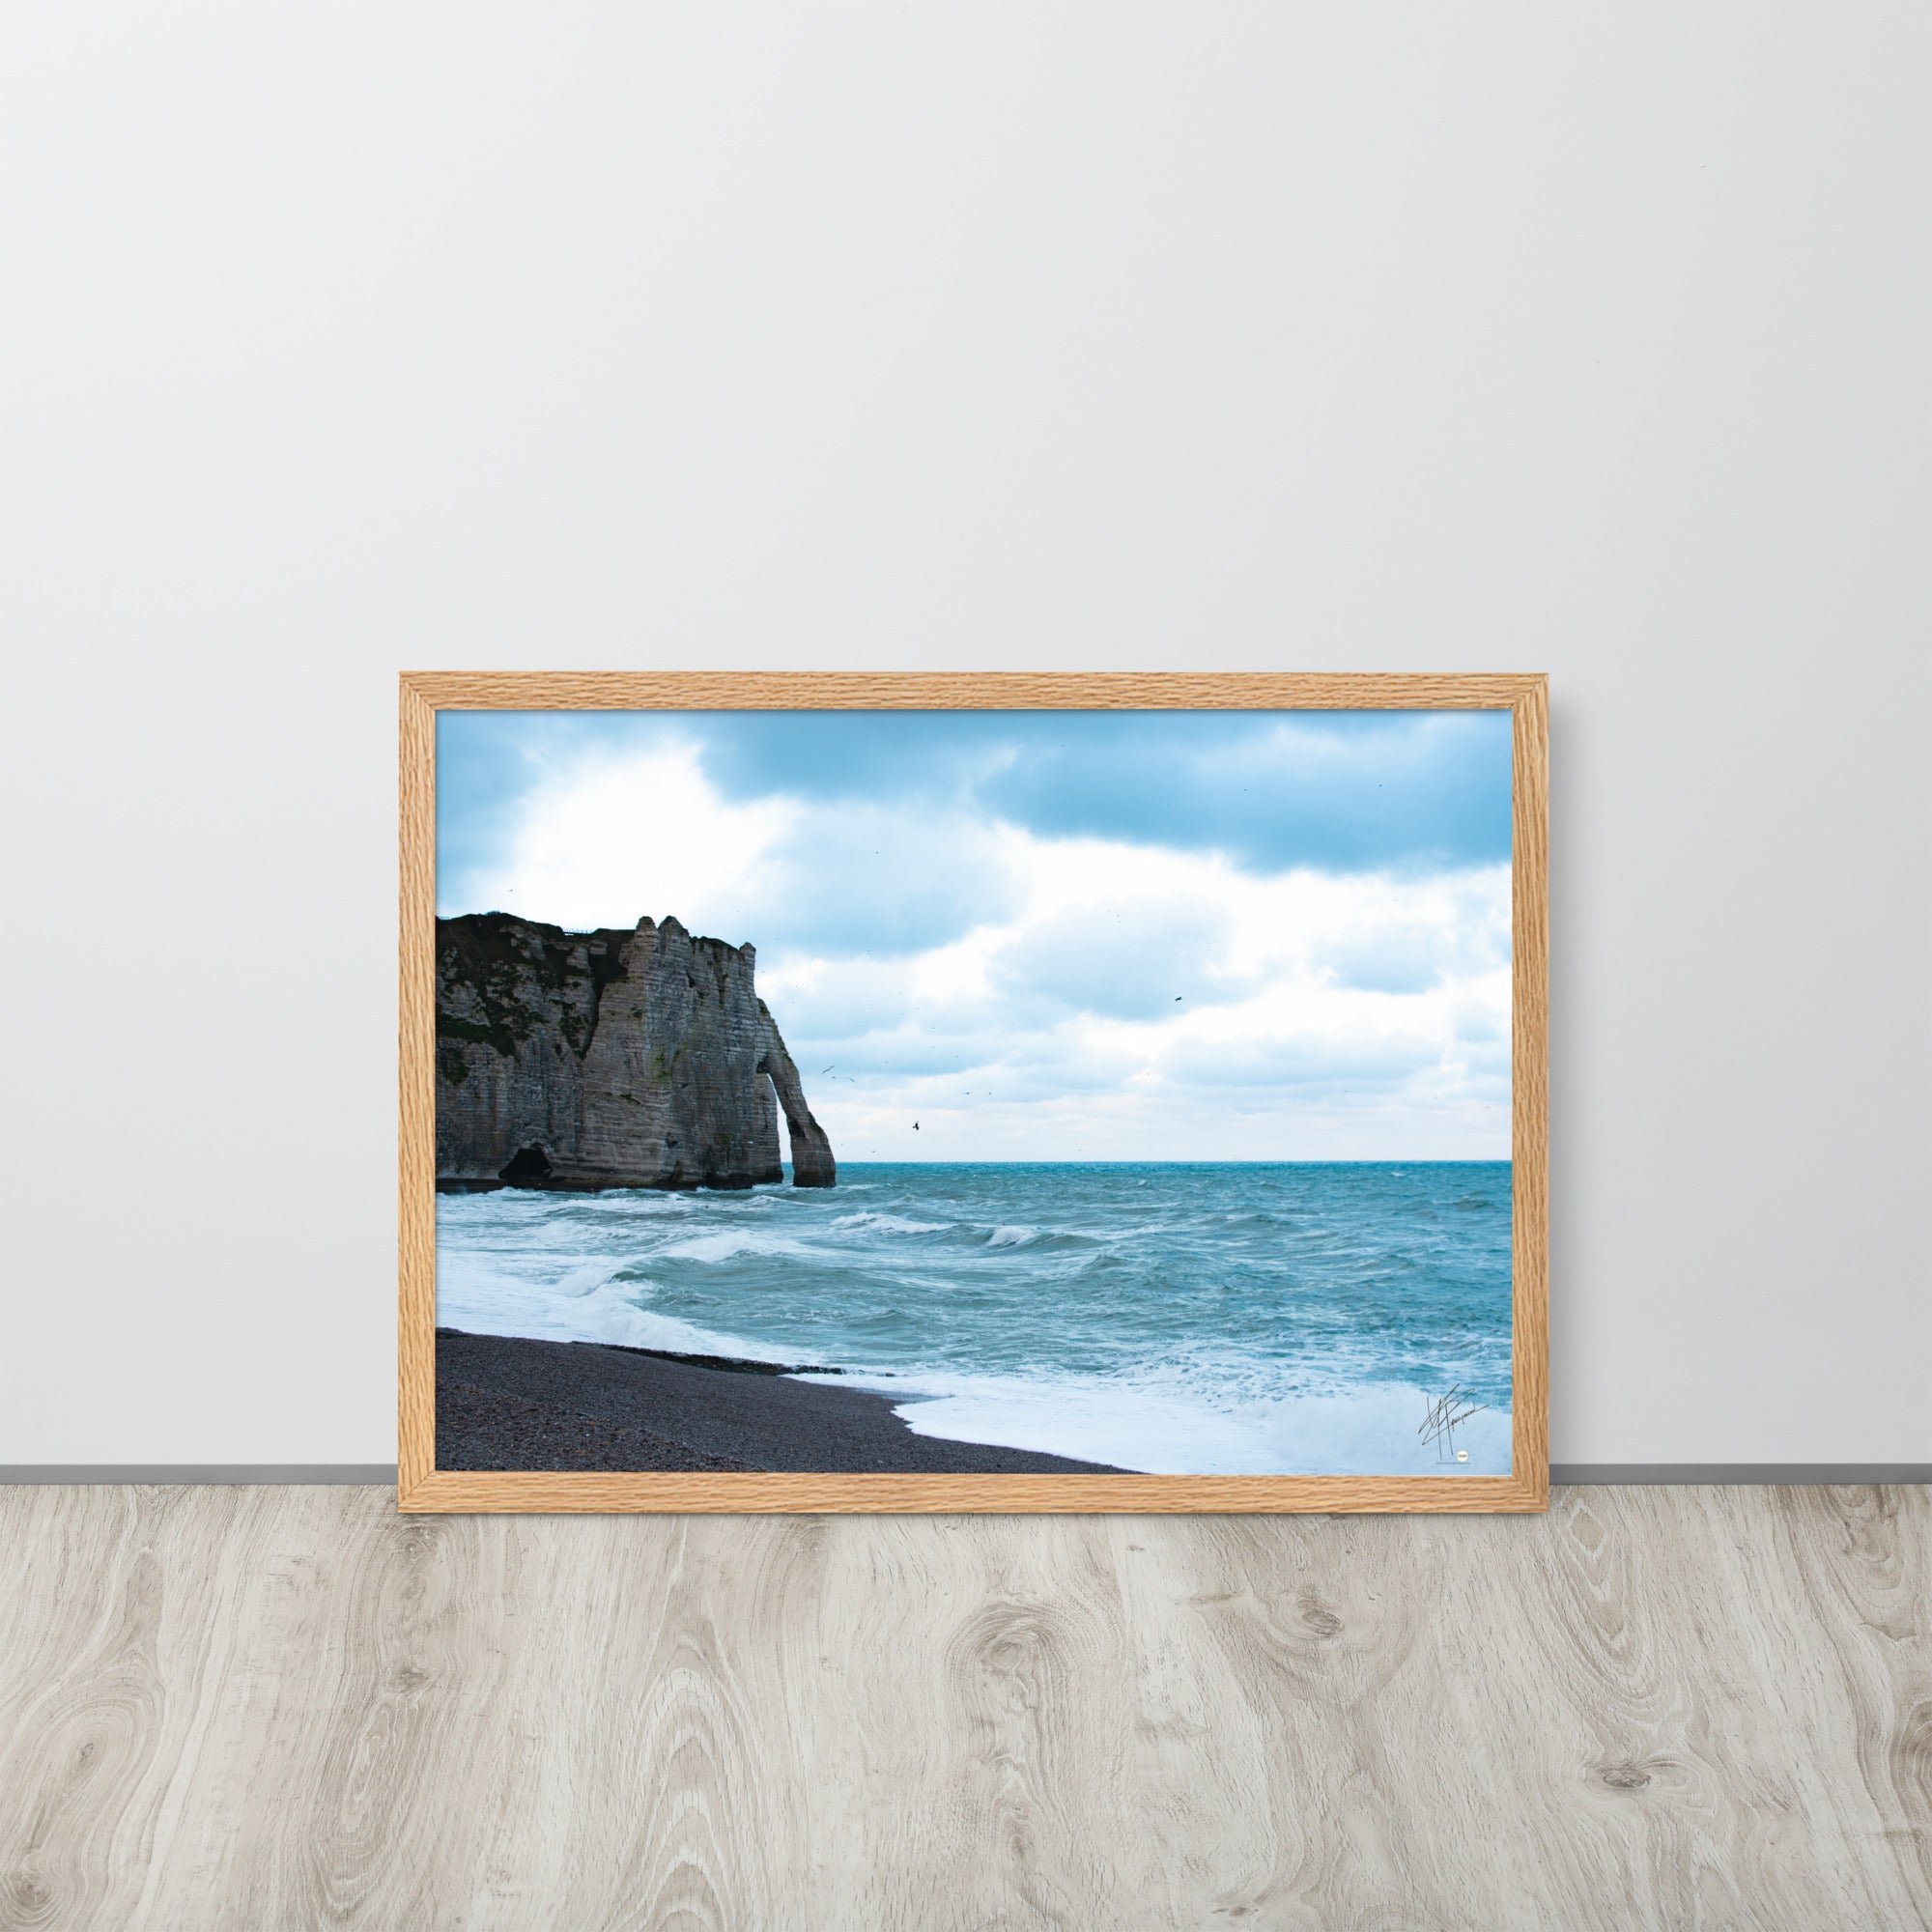 Photographie apaisante de la plage d'Etretat, où la mer caresse le rivage sous un ciel clair. Une représentation parfaite de la tranquillité et de la beauté naturelle de la côte normande.